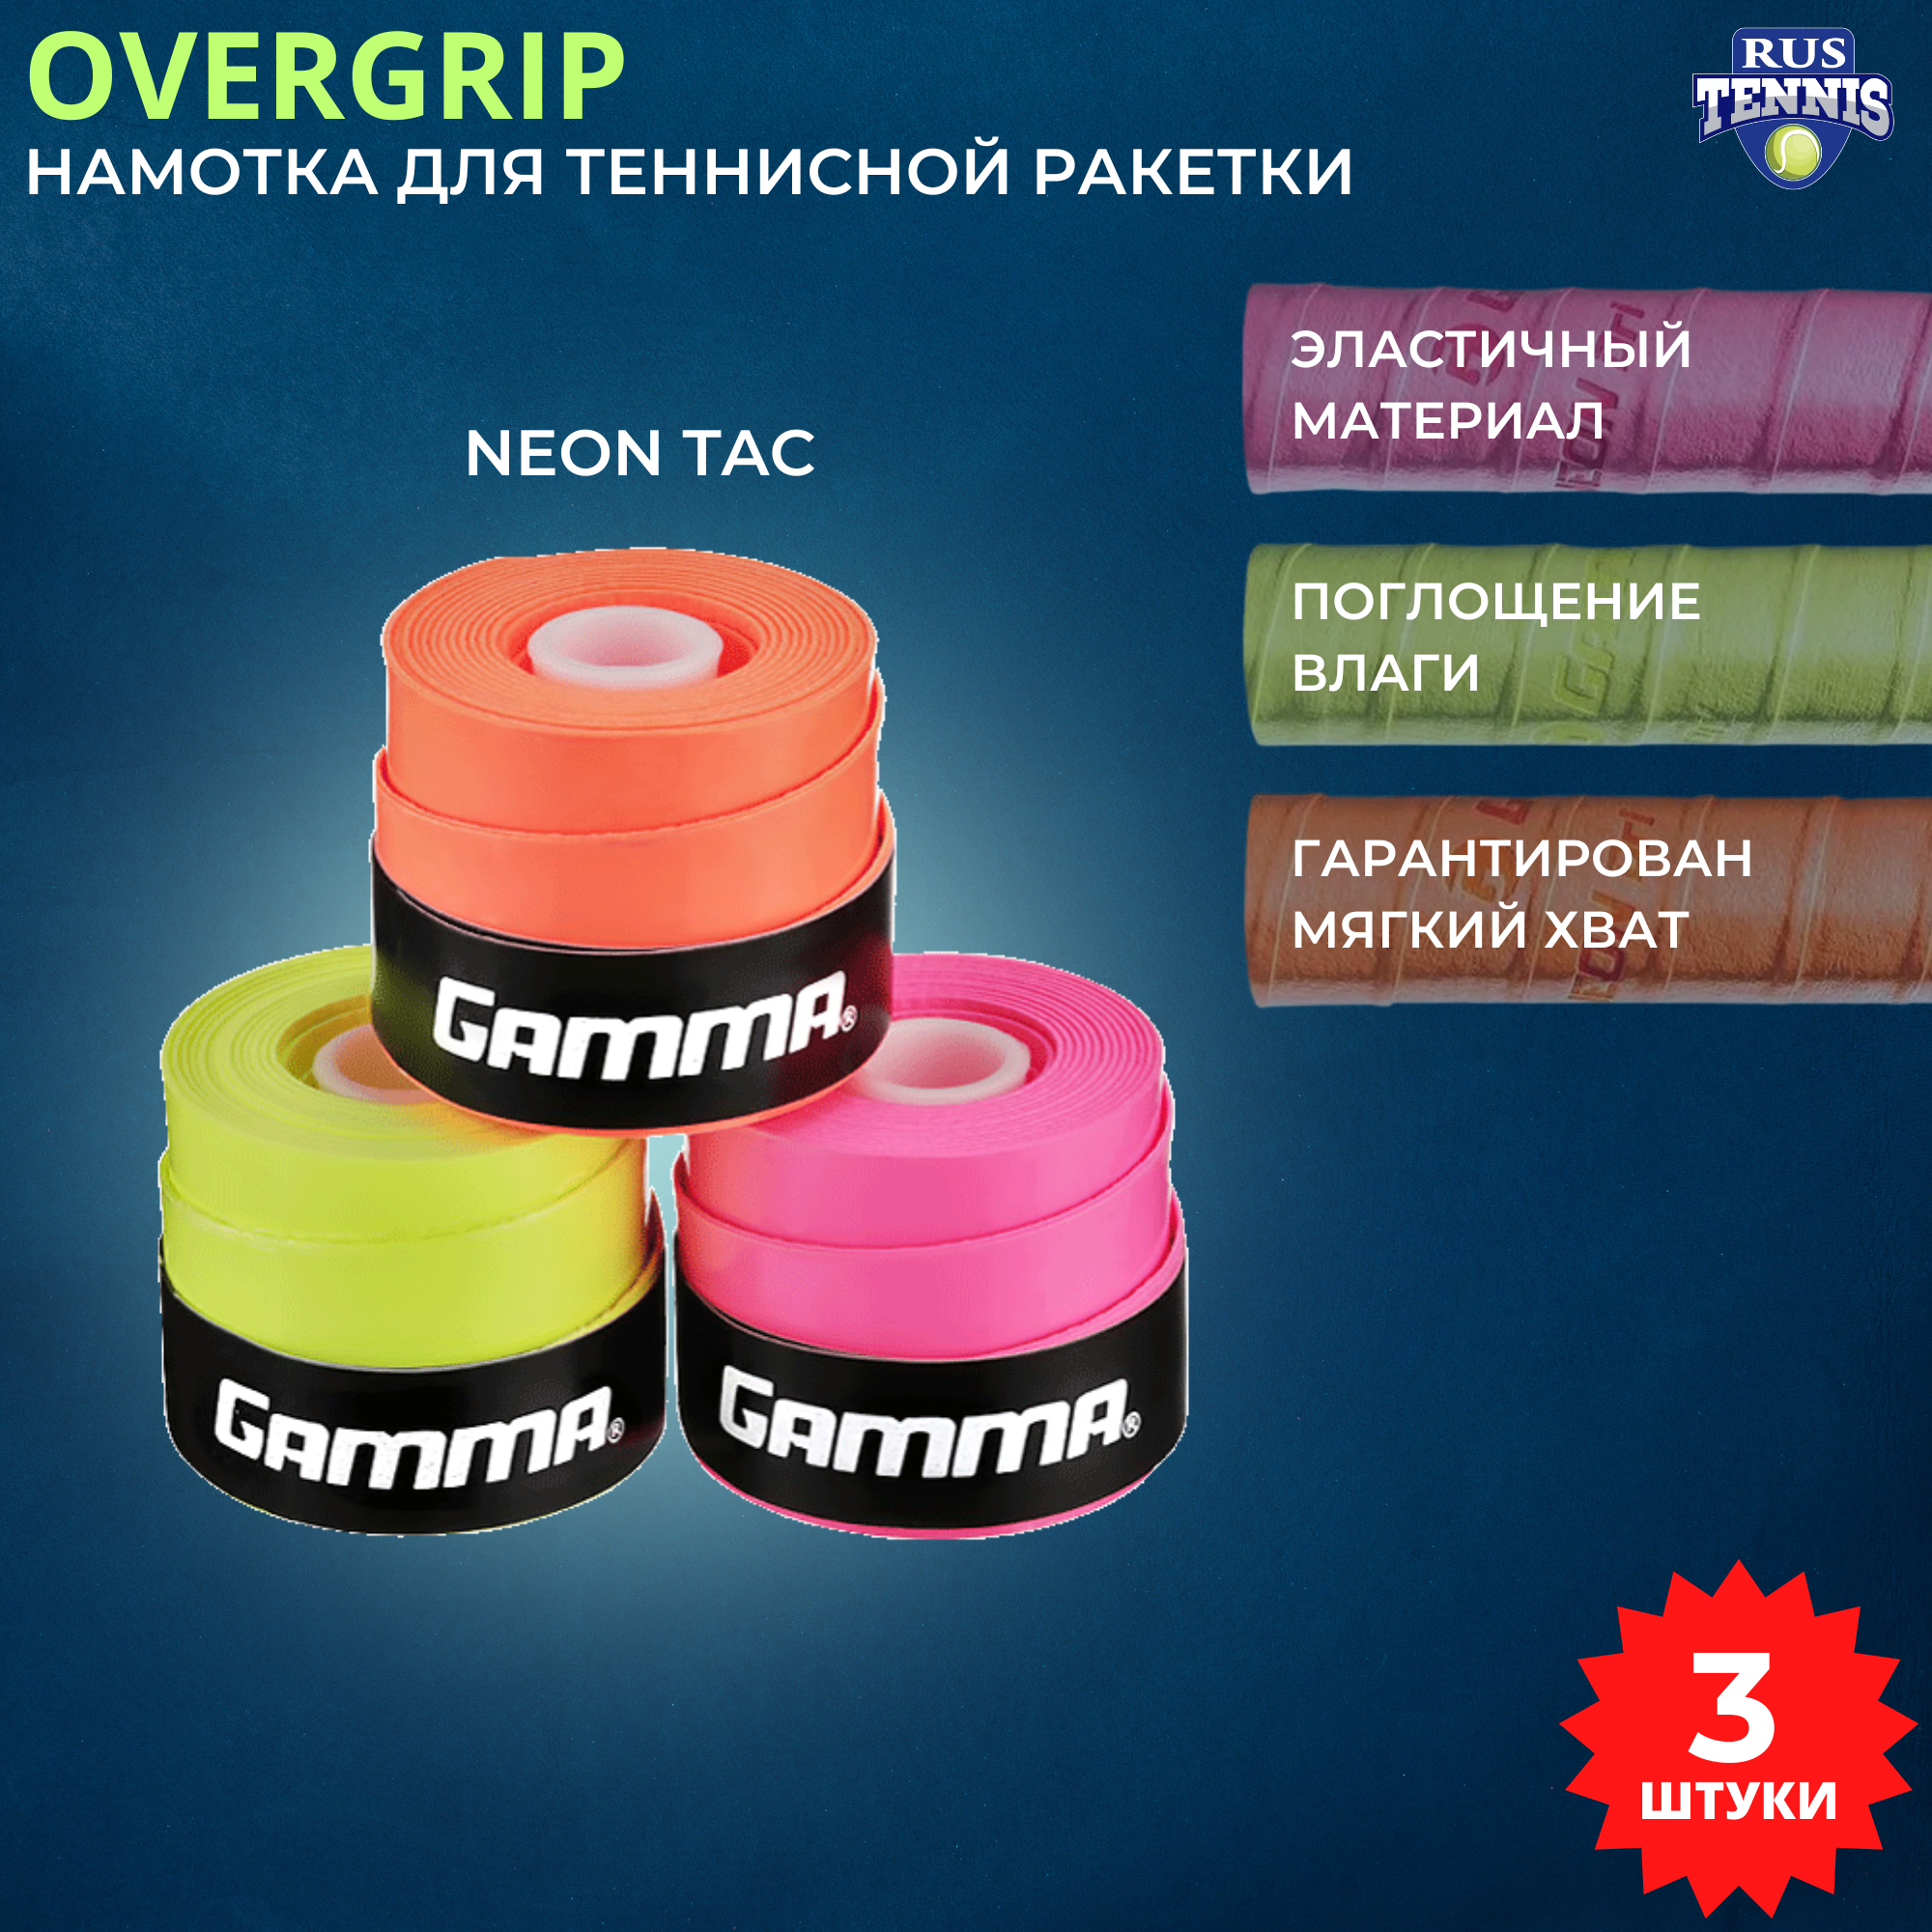 Намотка / Овергрип для теннисной ракетки Gamma NEON Tac